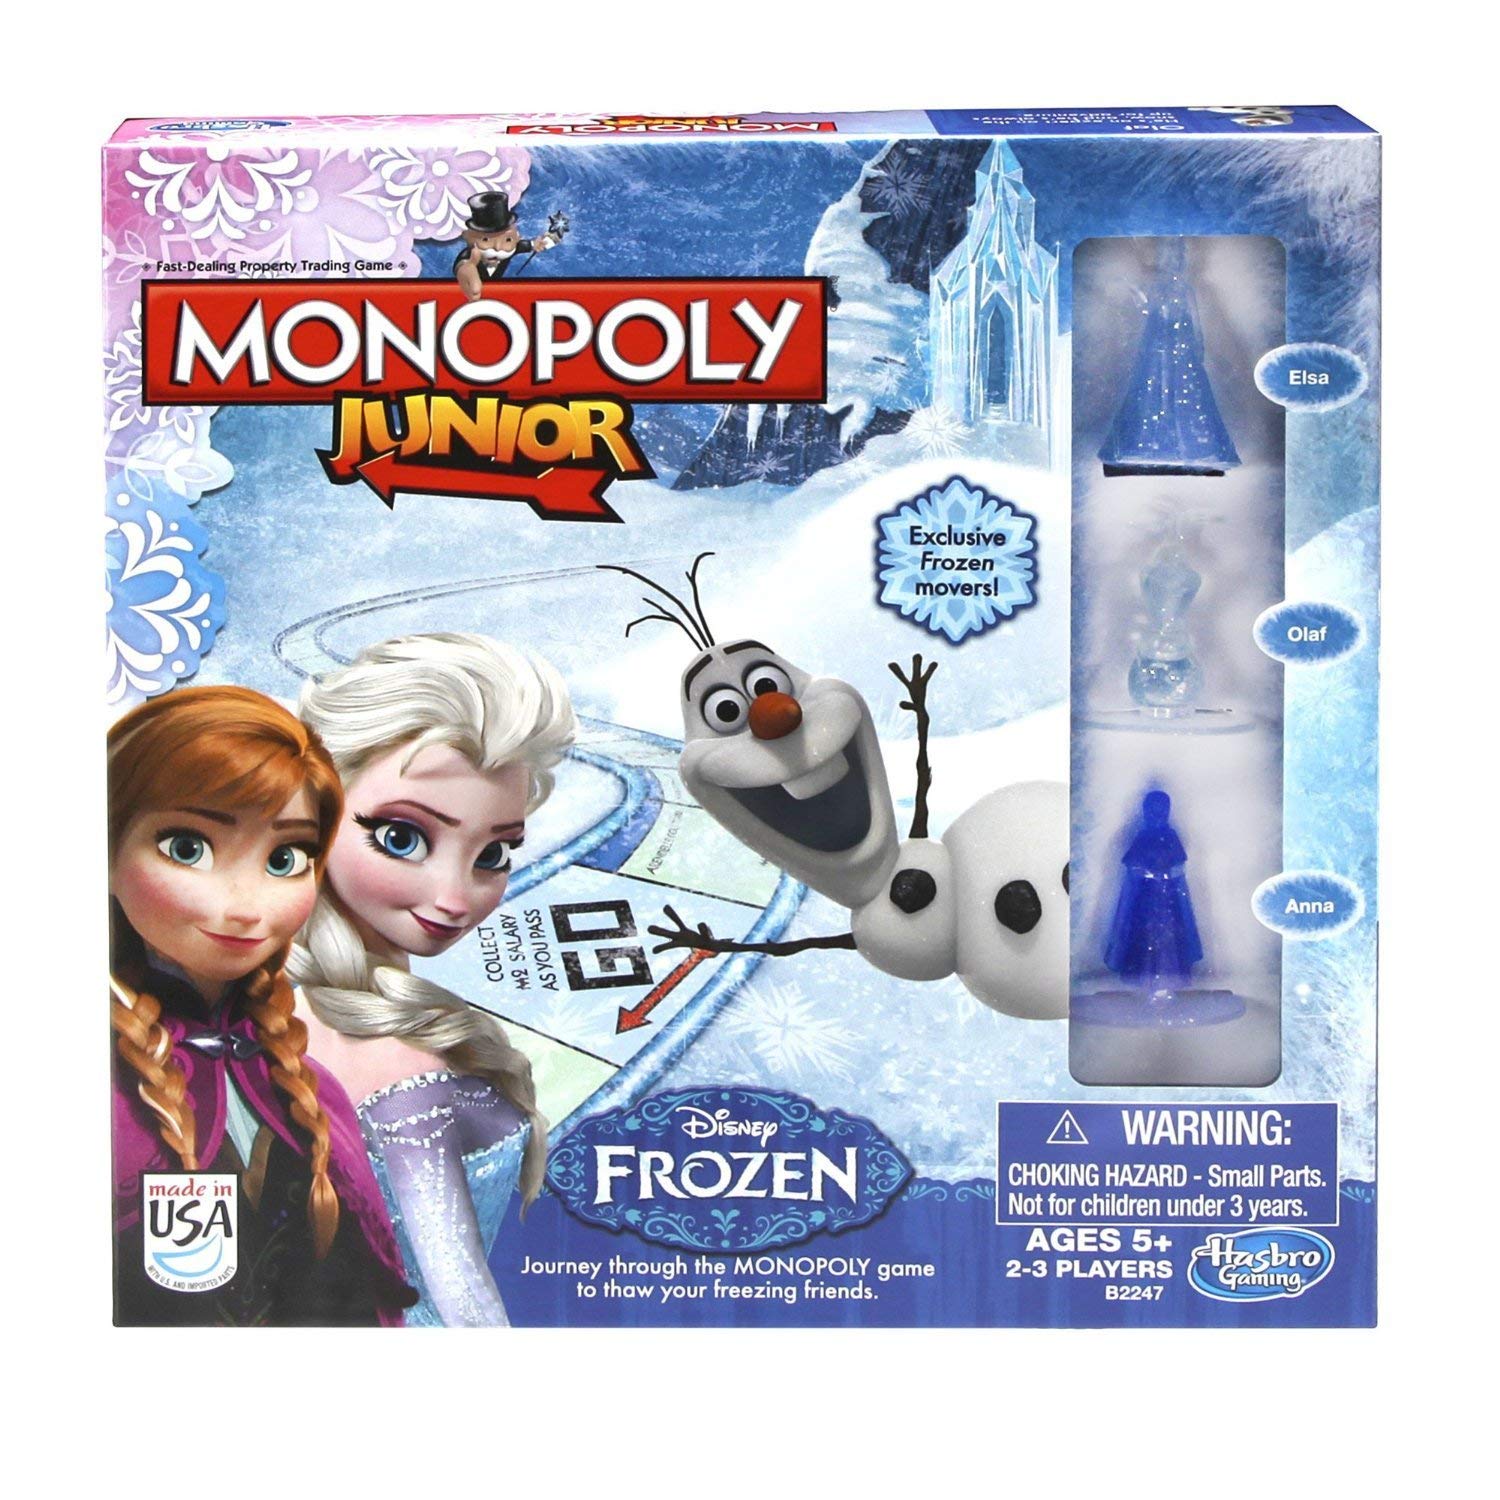 Disney Frozen Monopoly Frozen Edition Board Game: Disney Frozen ...